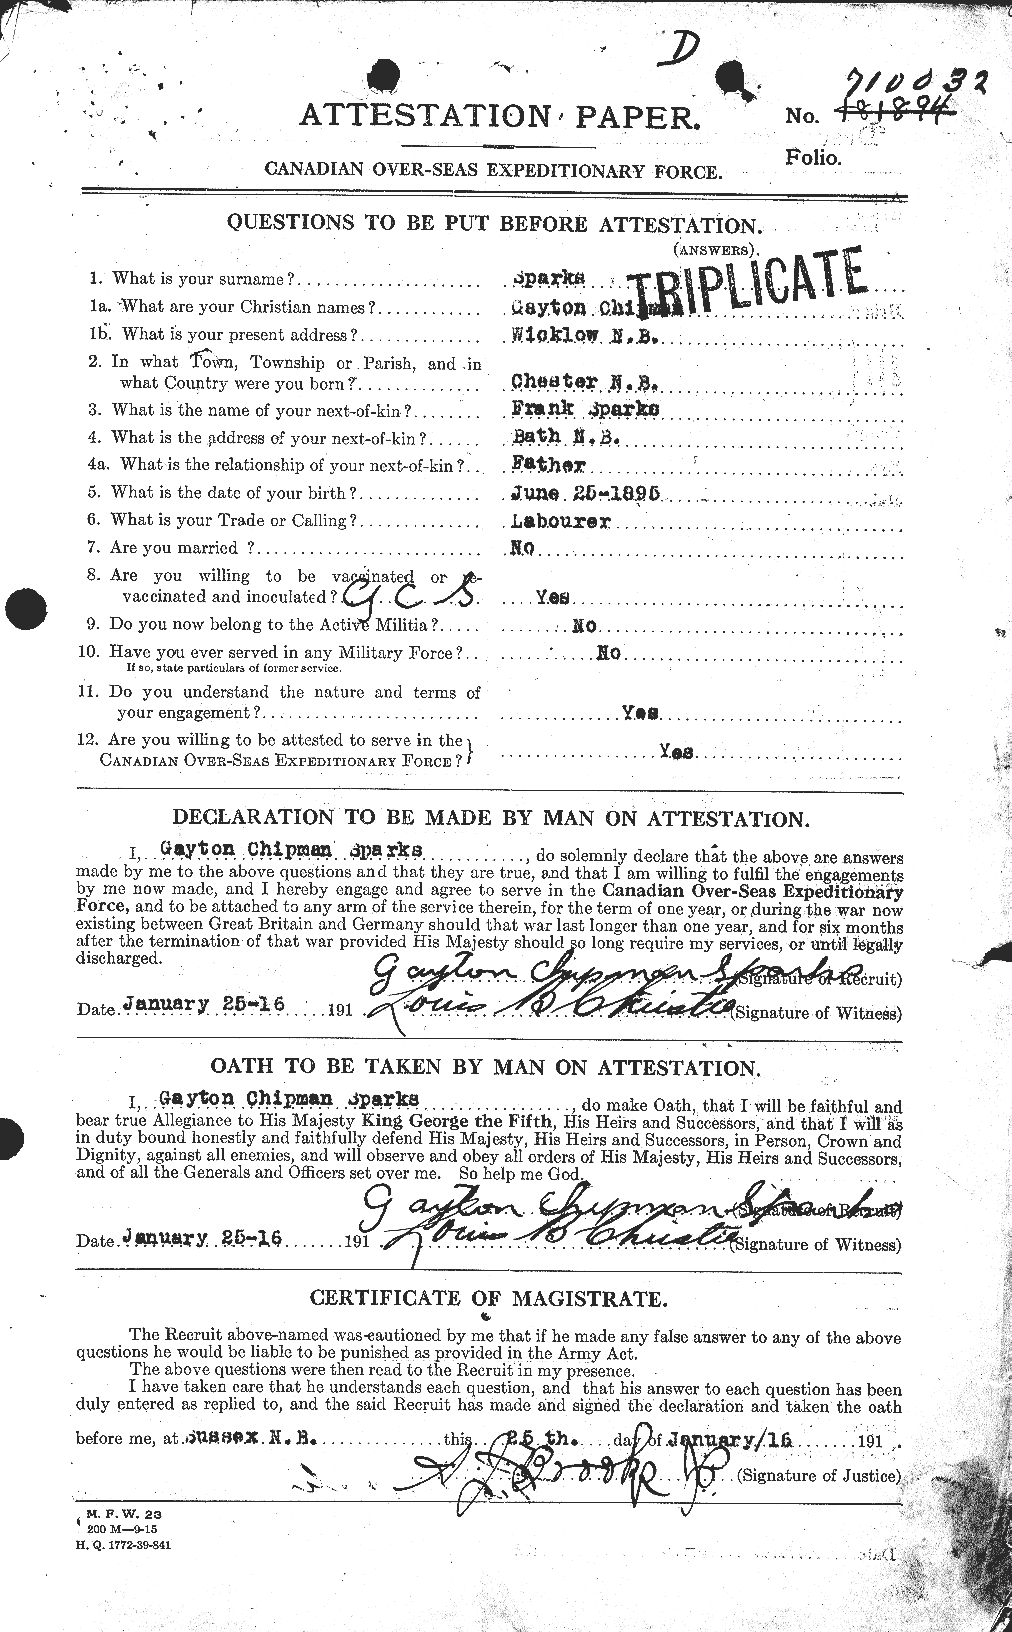 Dossiers du Personnel de la Première Guerre mondiale - CEC 622312a